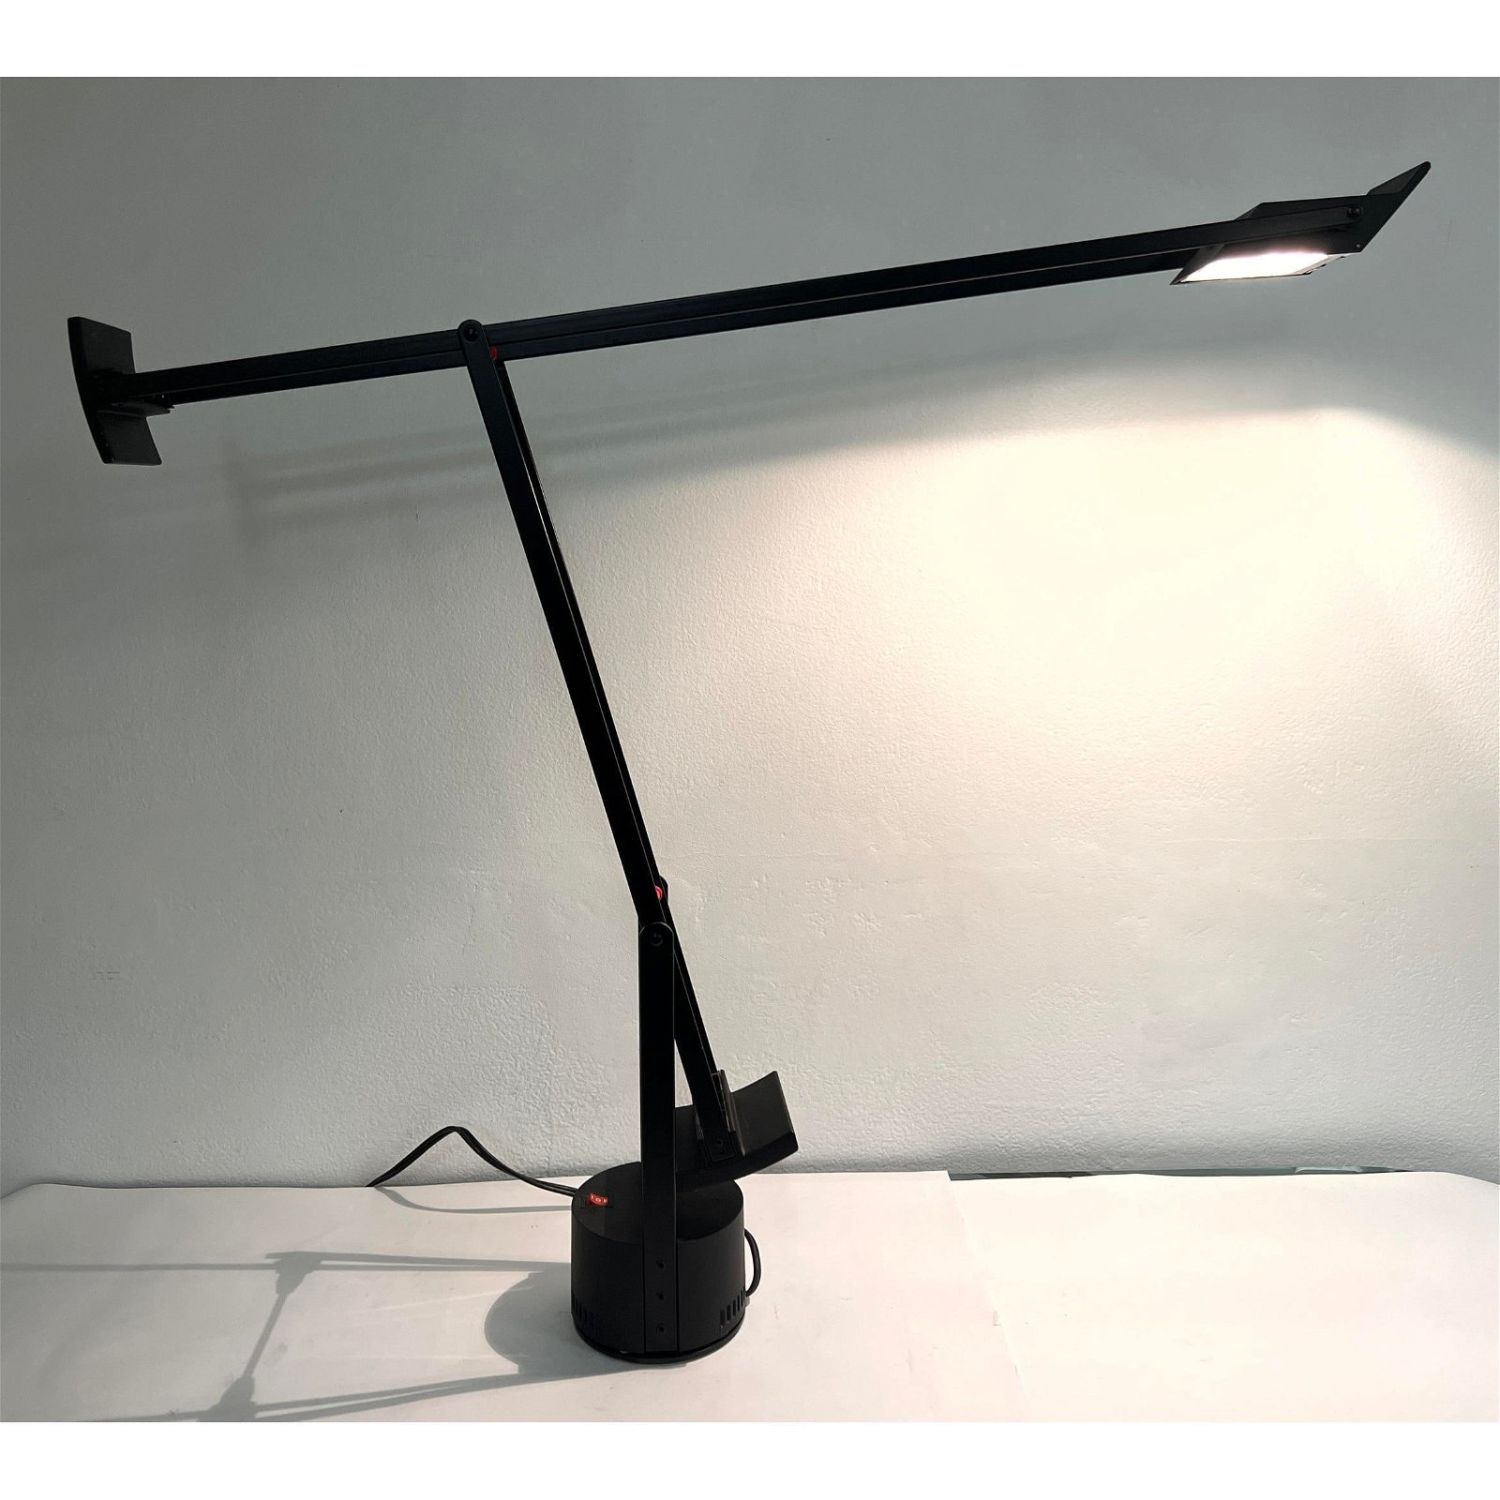 Tizio Classic Black Desk Lamp by